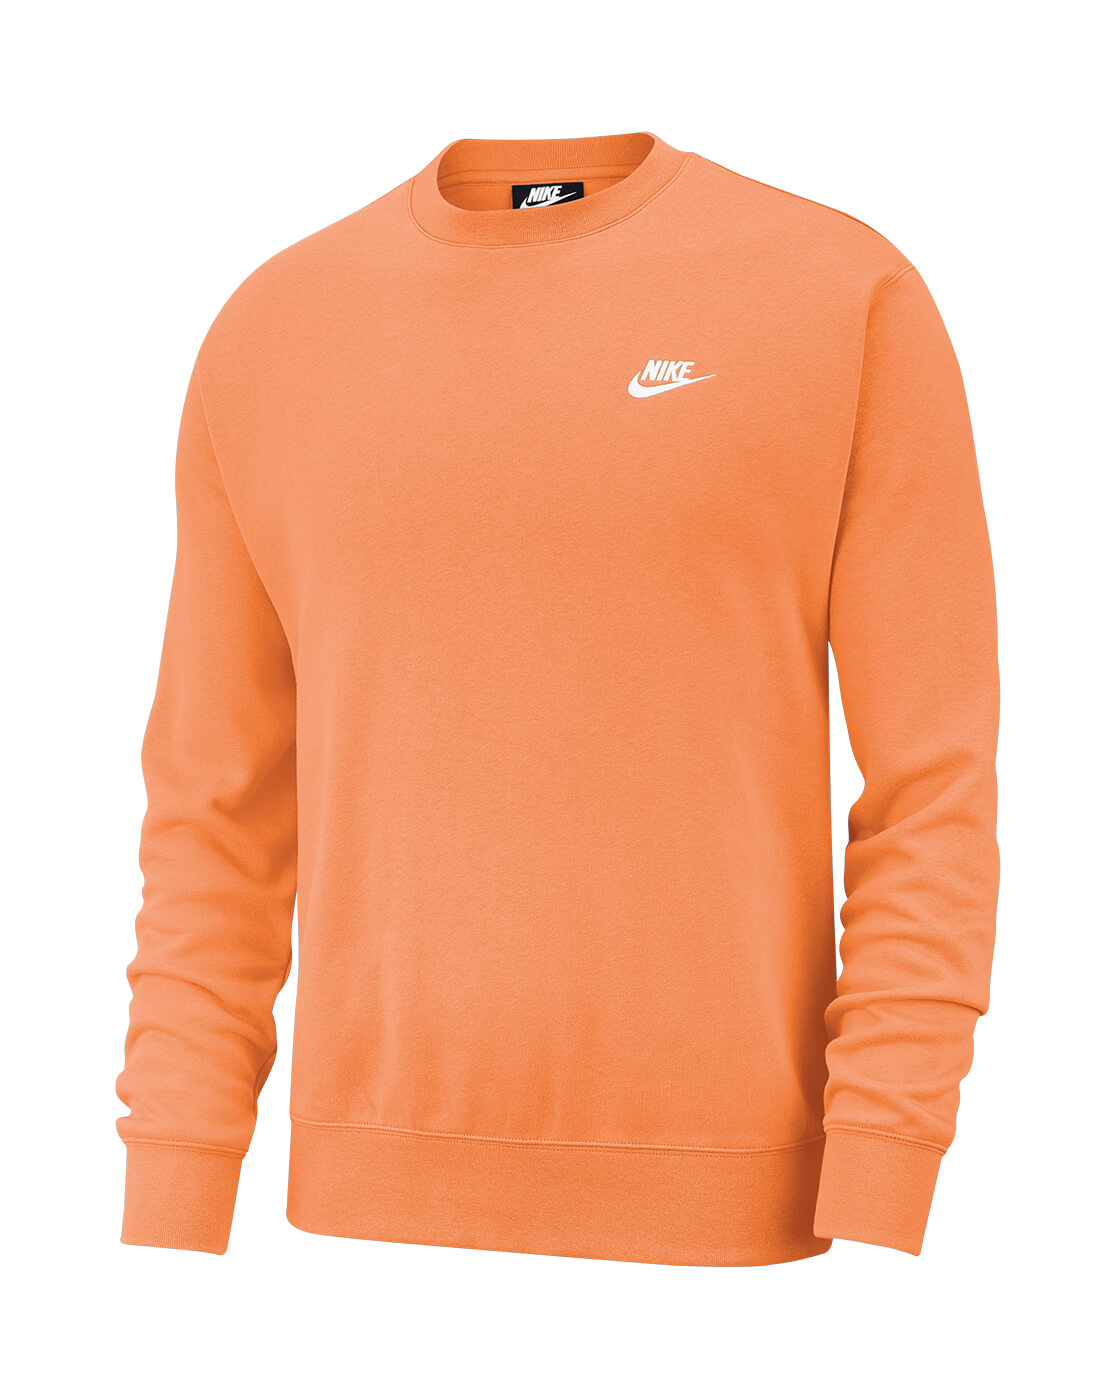 nike orange sweater